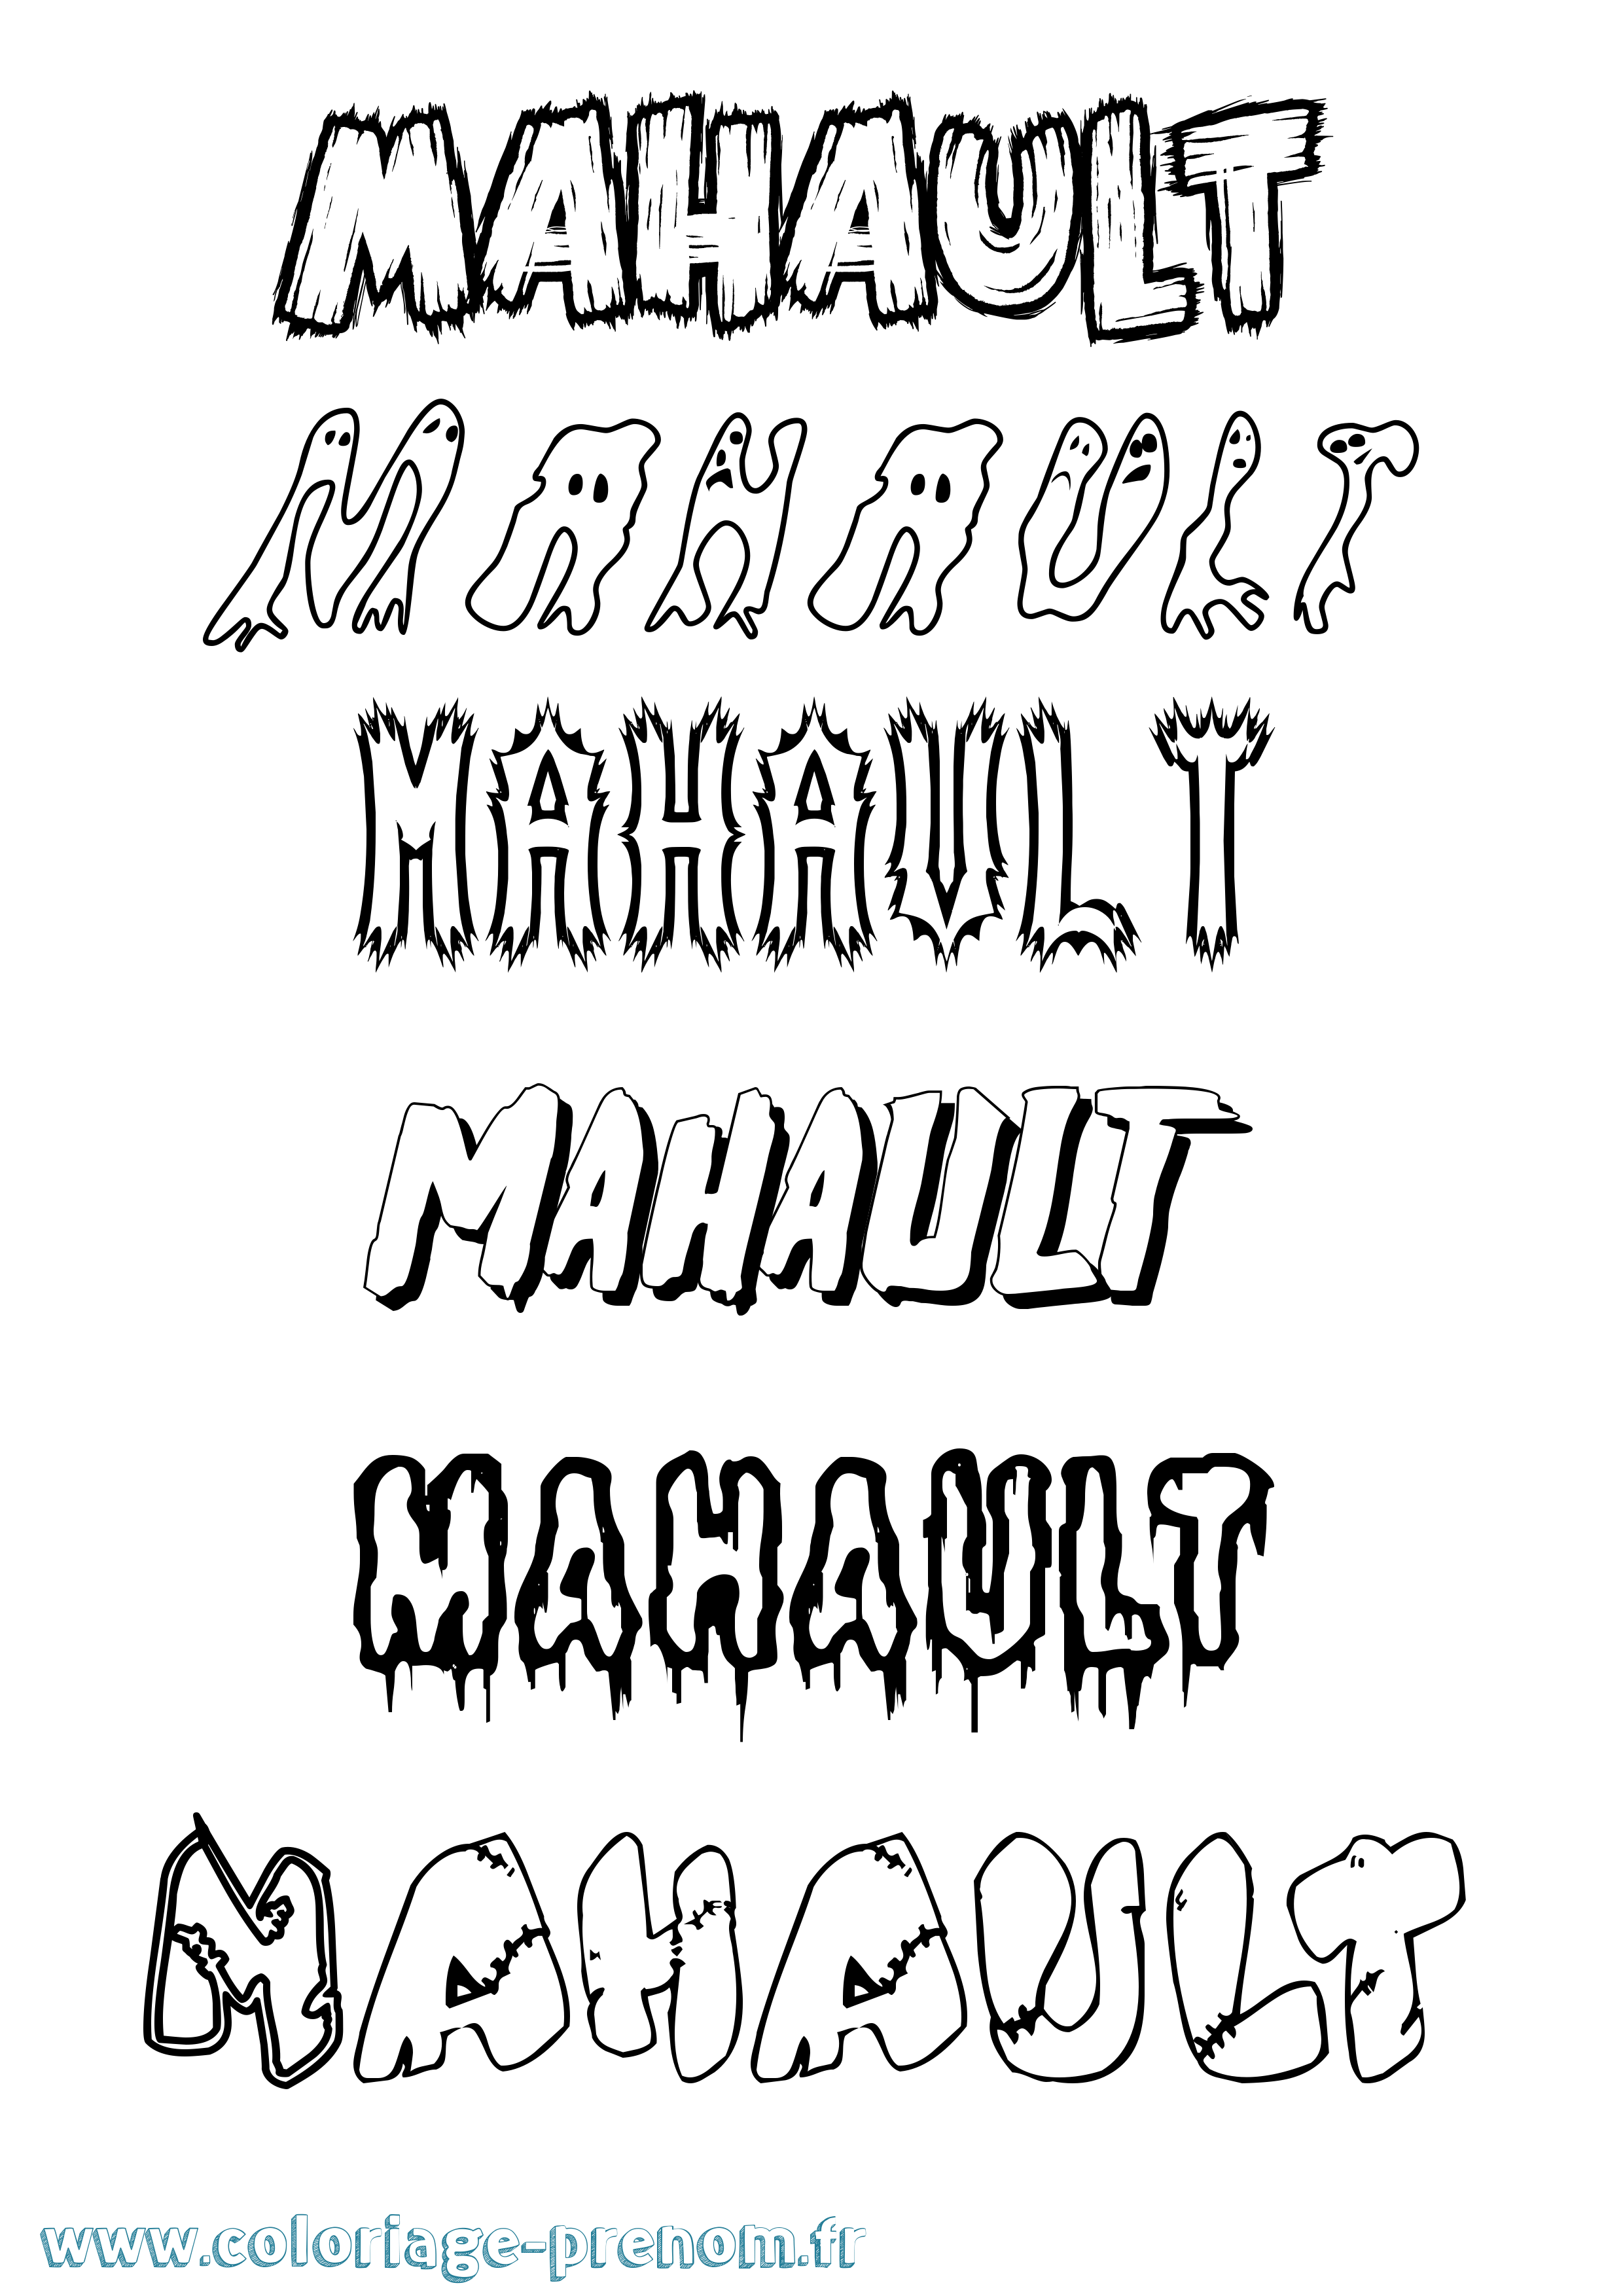 Coloriage prénom Mahault